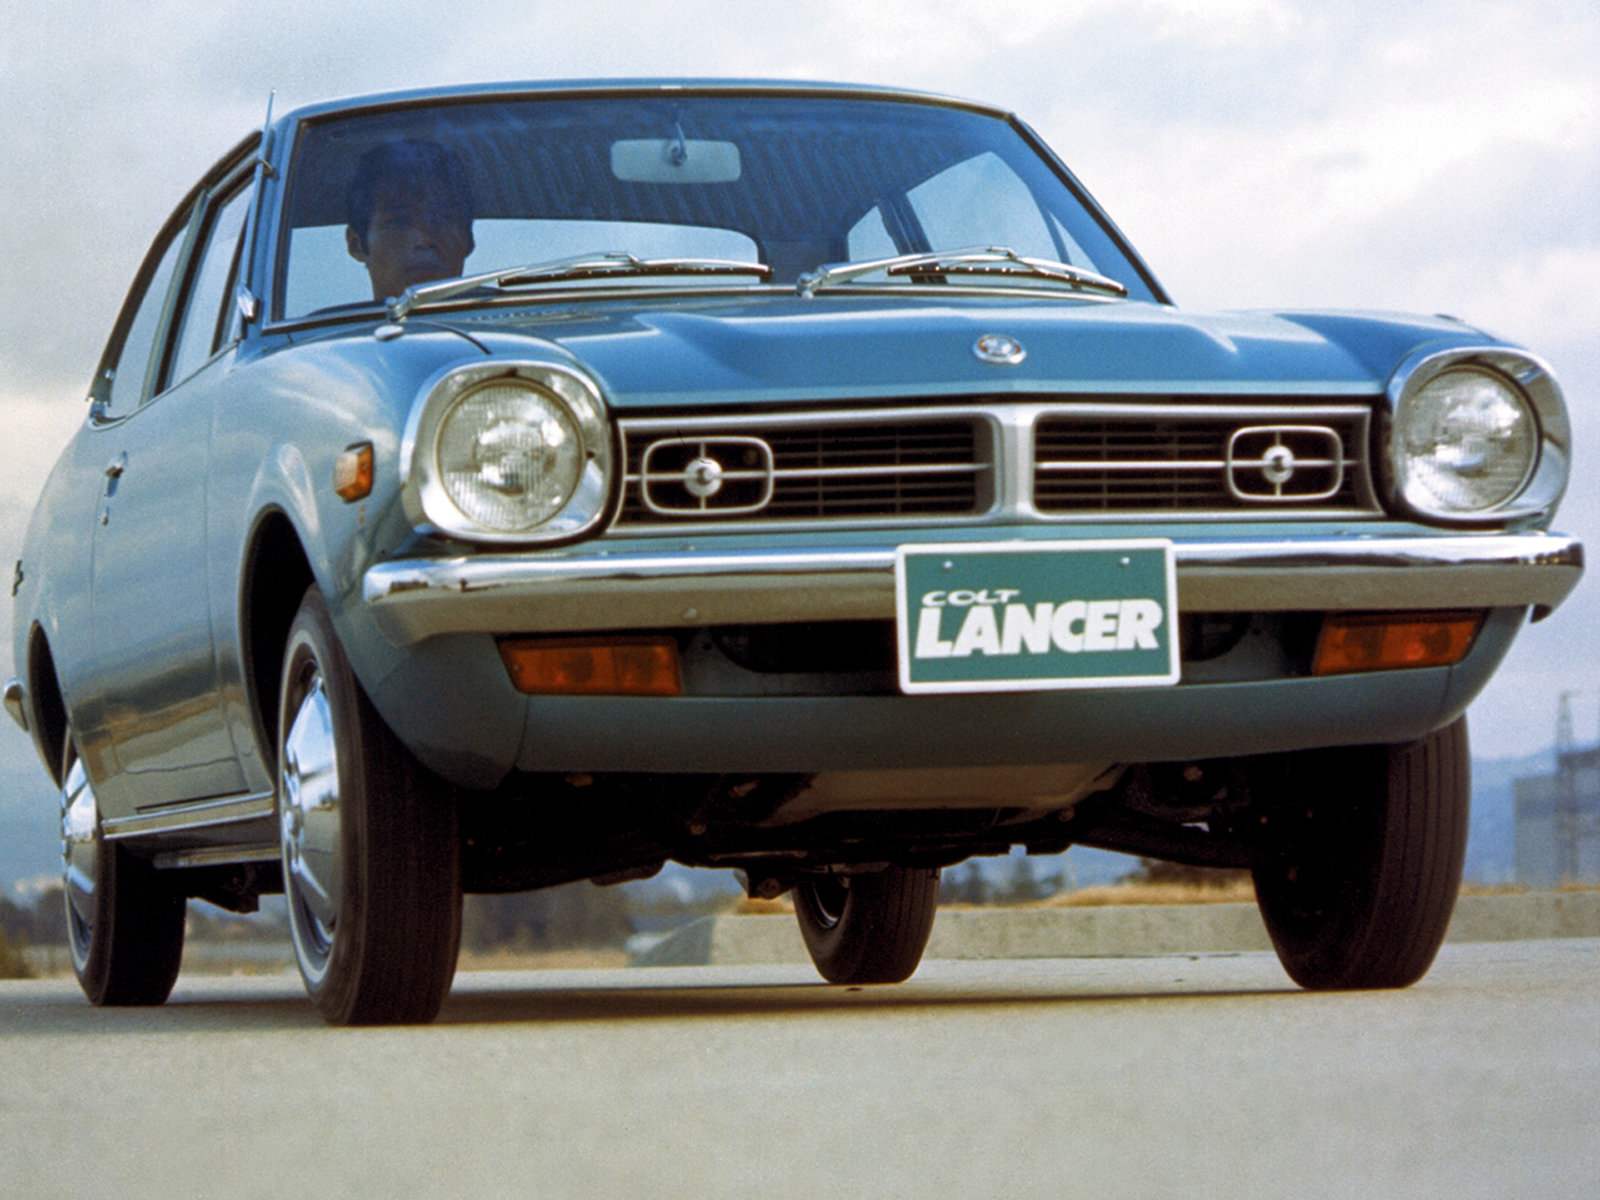 Mitsubishi Lancer первого поколения (1973 г.)